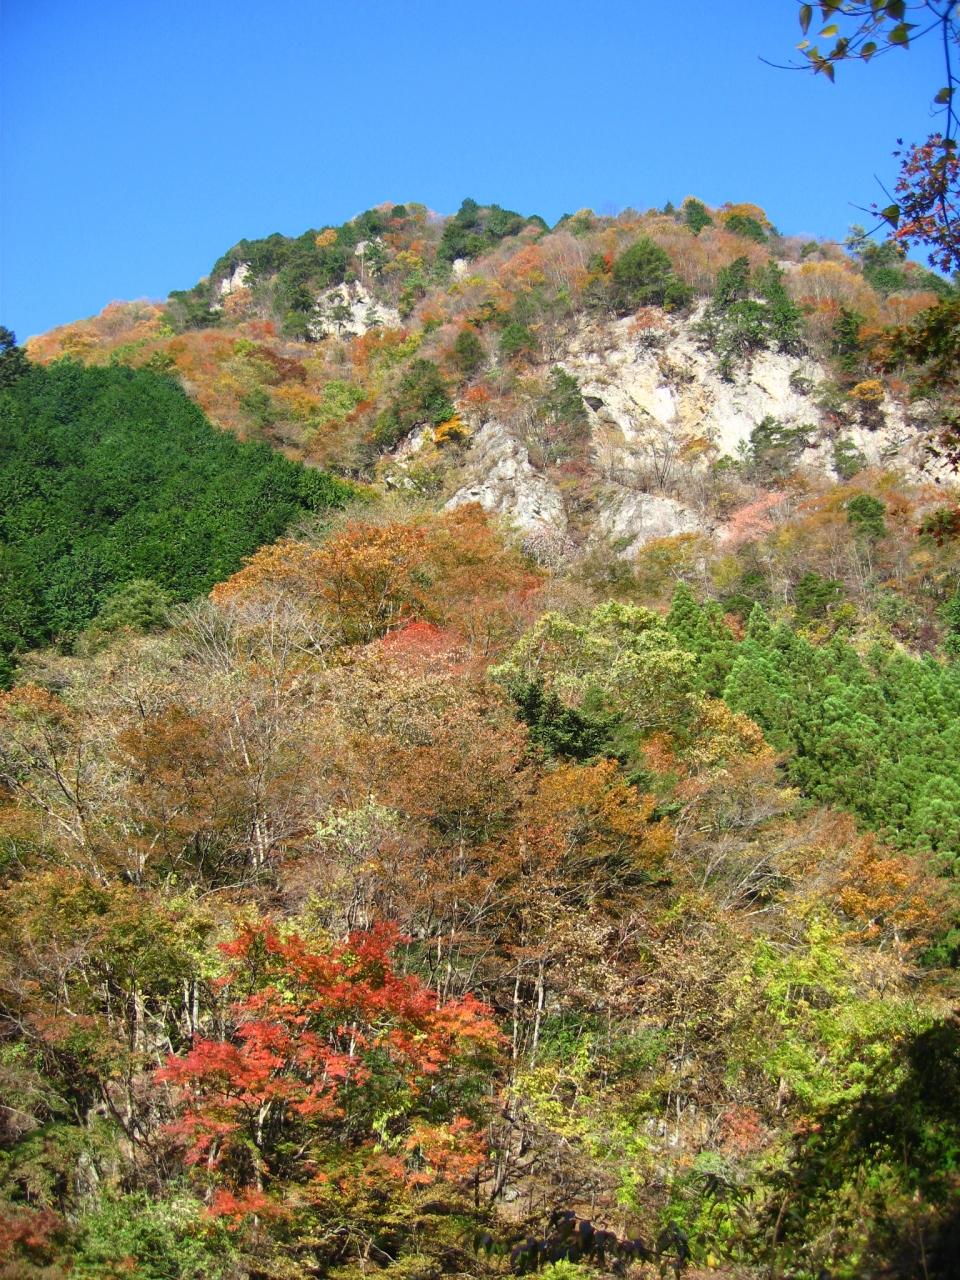 奥多摩の展望台 川苔山に登頂 紅葉と落葉のはざまで 奥多摩 東京 の旅行記 ブログ By マキタンさん フォートラベル